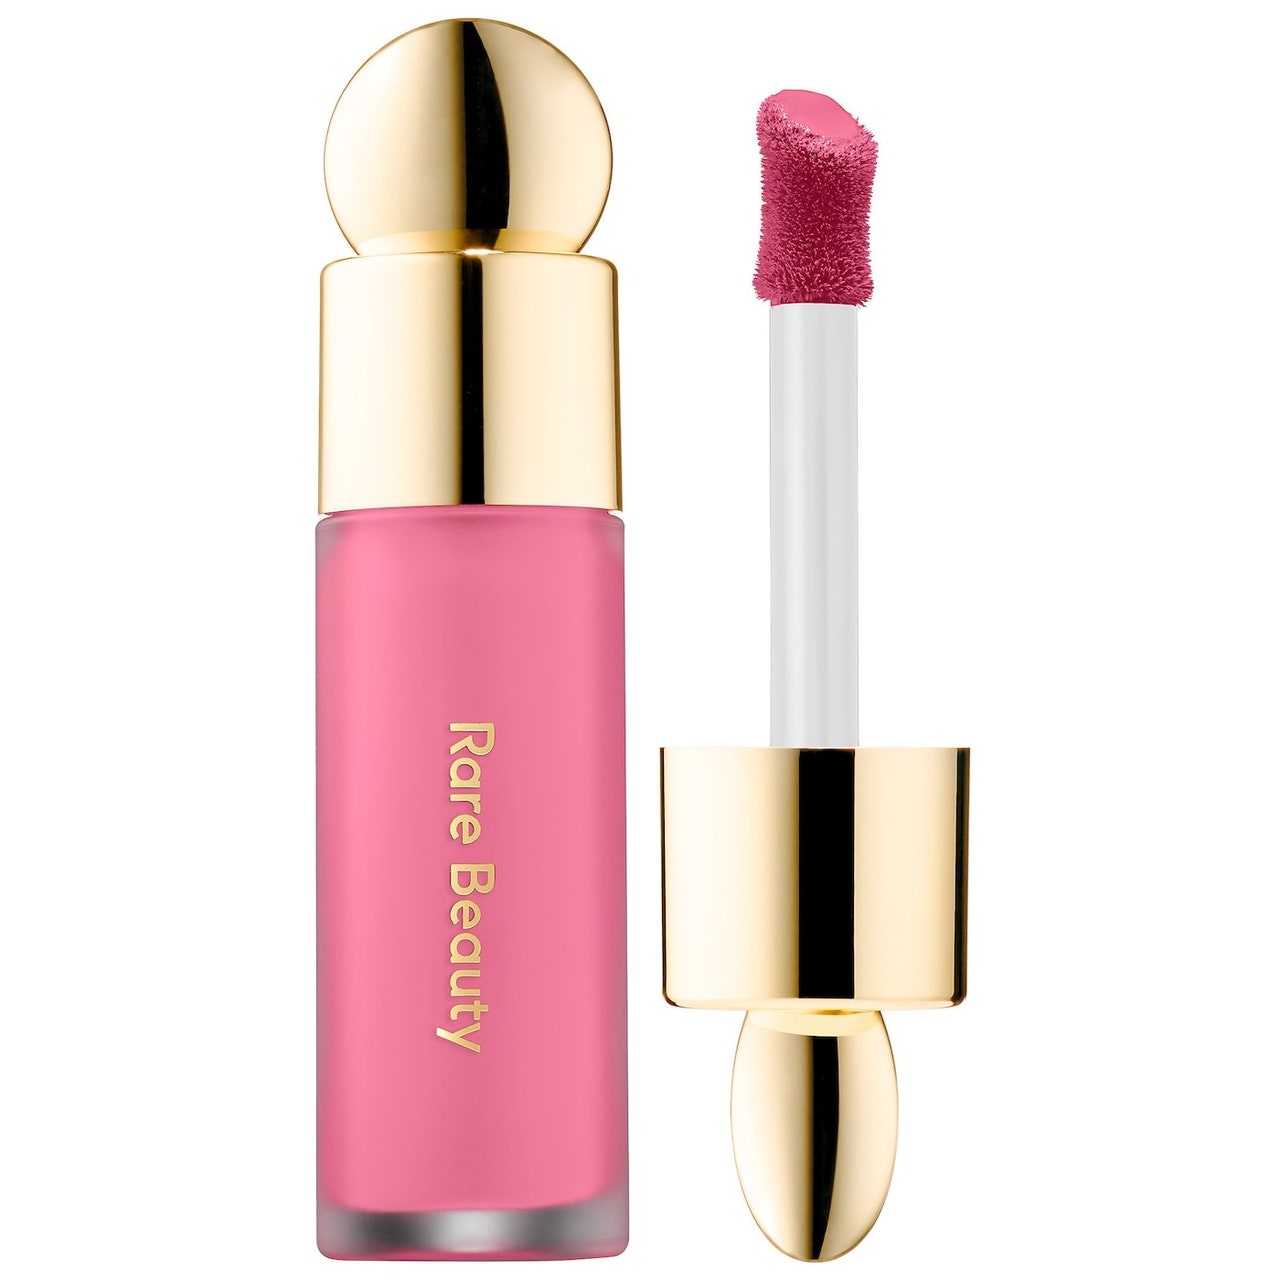 Rare Beauty Soft Pinch Liquid Blush Fläschchen mit rosa flüssigem Rouge mit goldener Kappe und Stift auf weißem Hintergrund